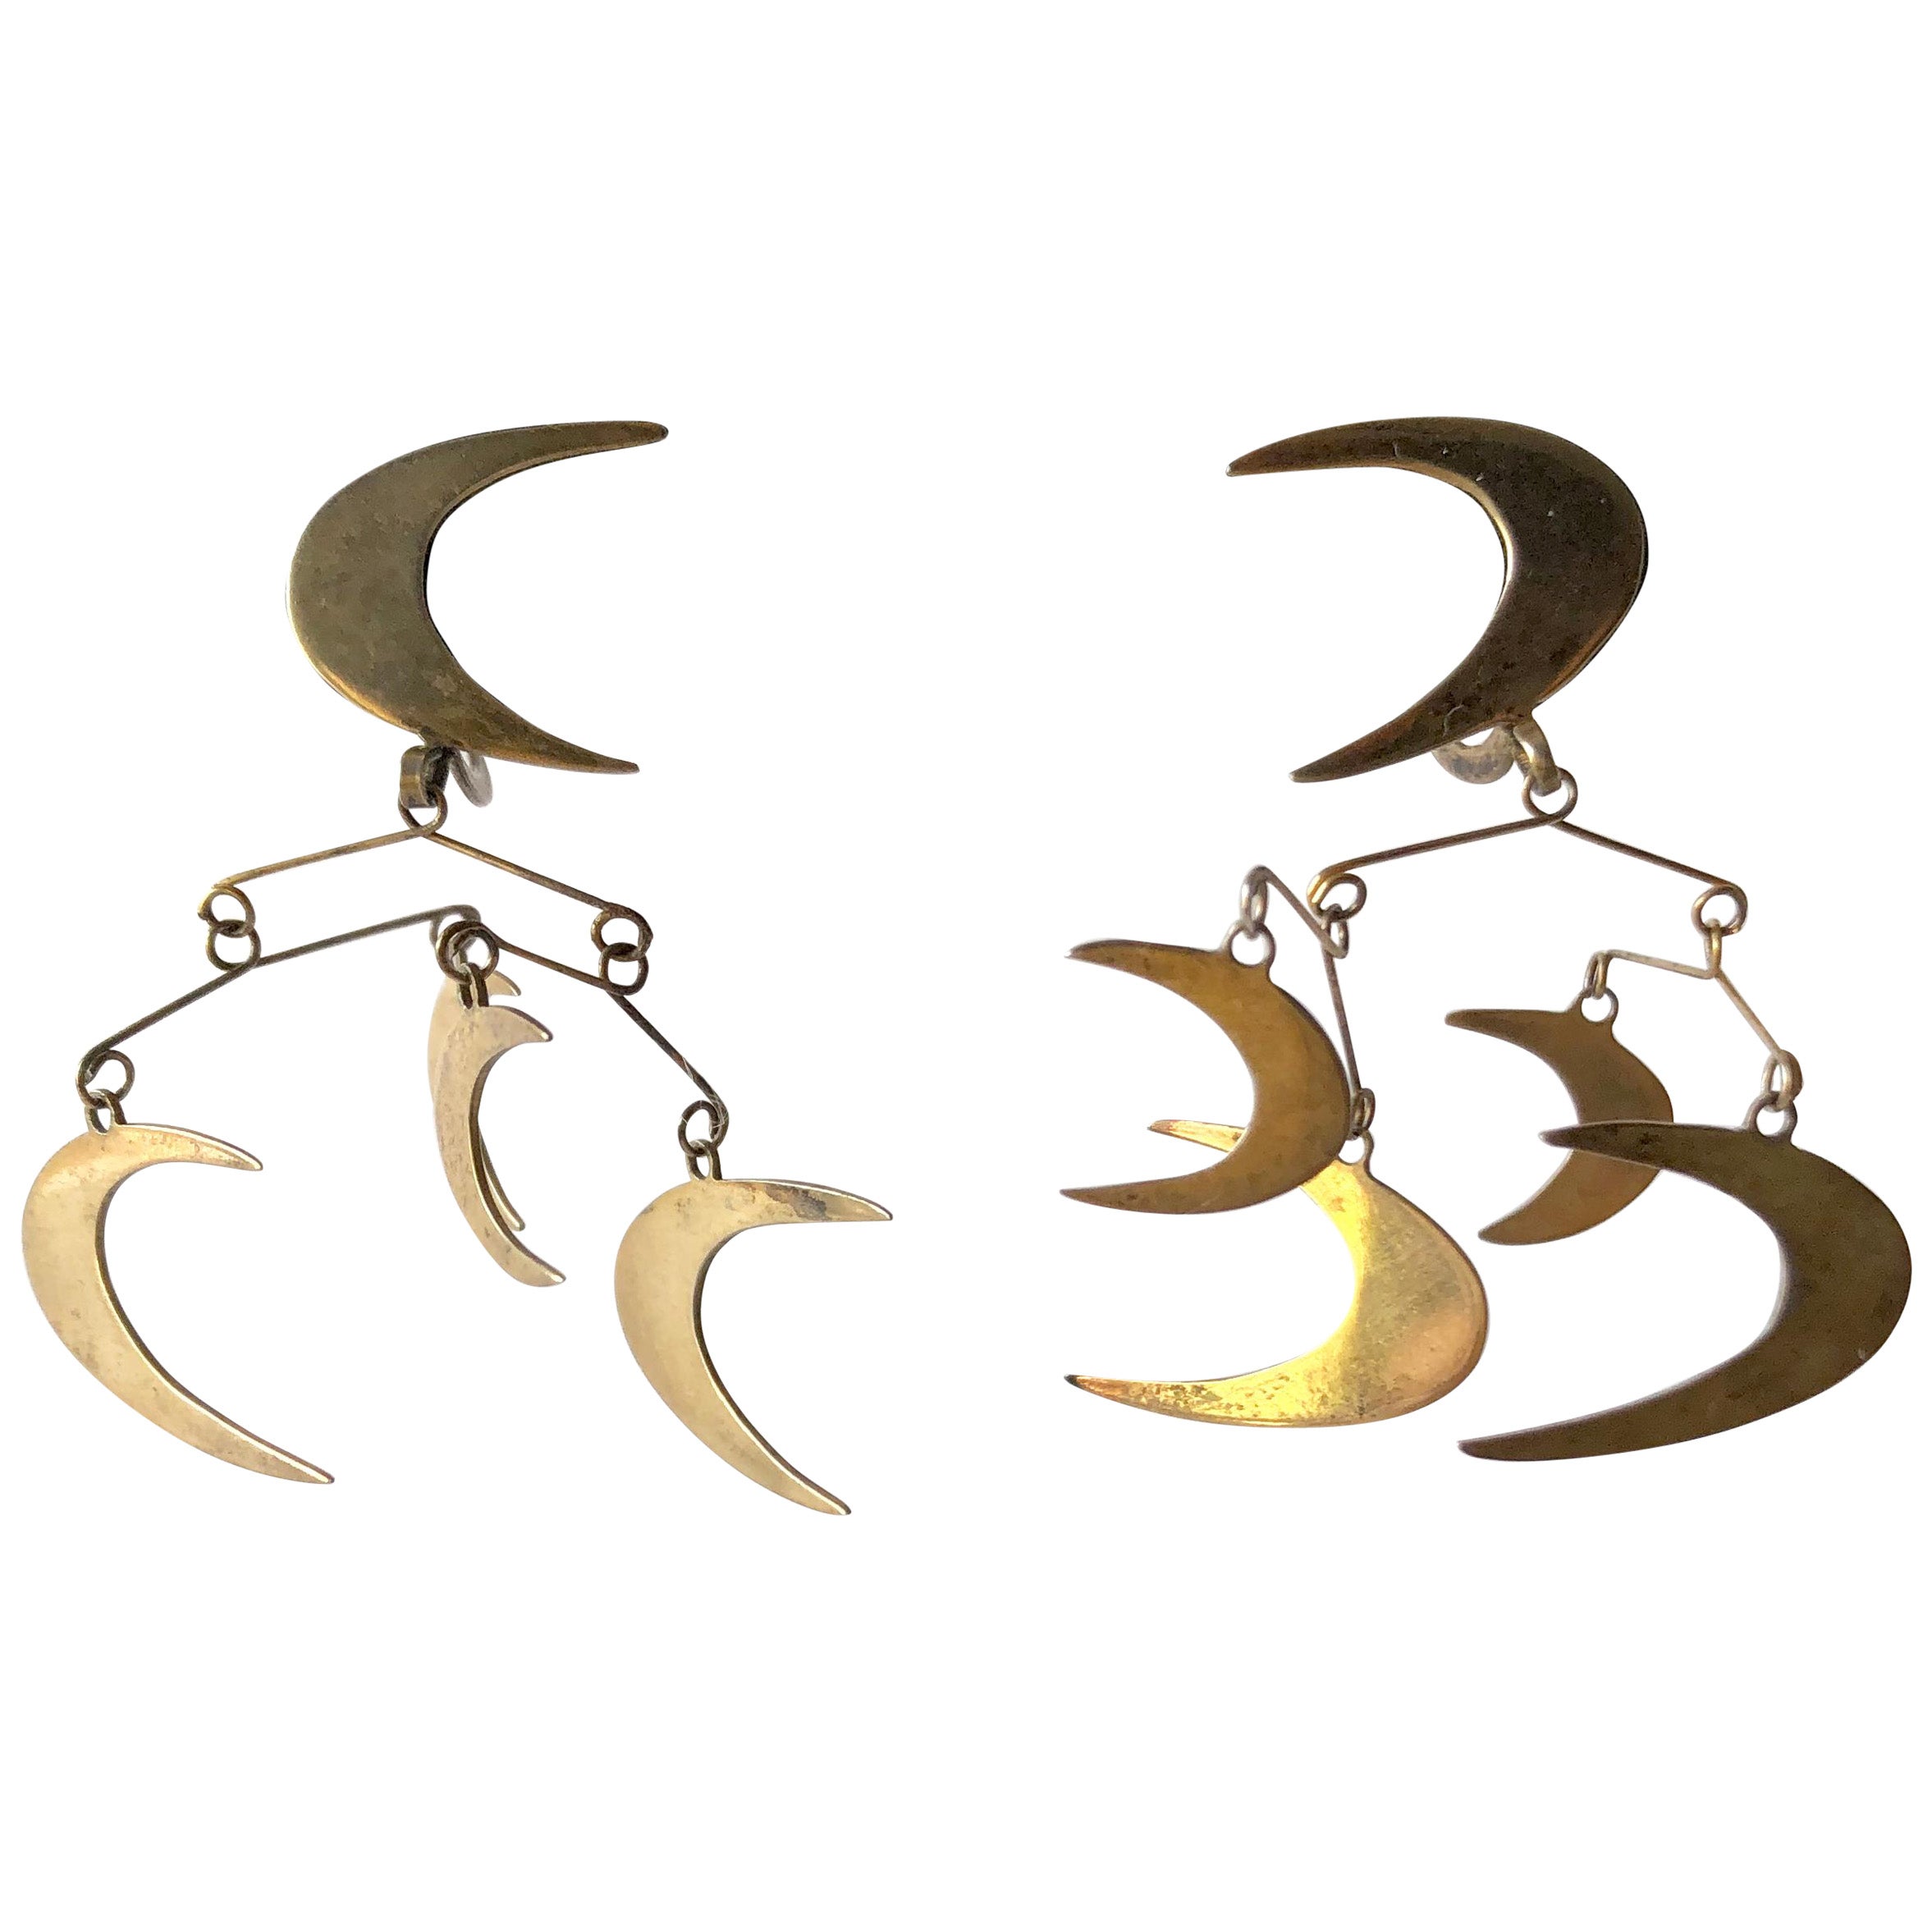 Ruth Berridge American Modernist Silver Vermeil Kinetic Mobile Moon Earrings